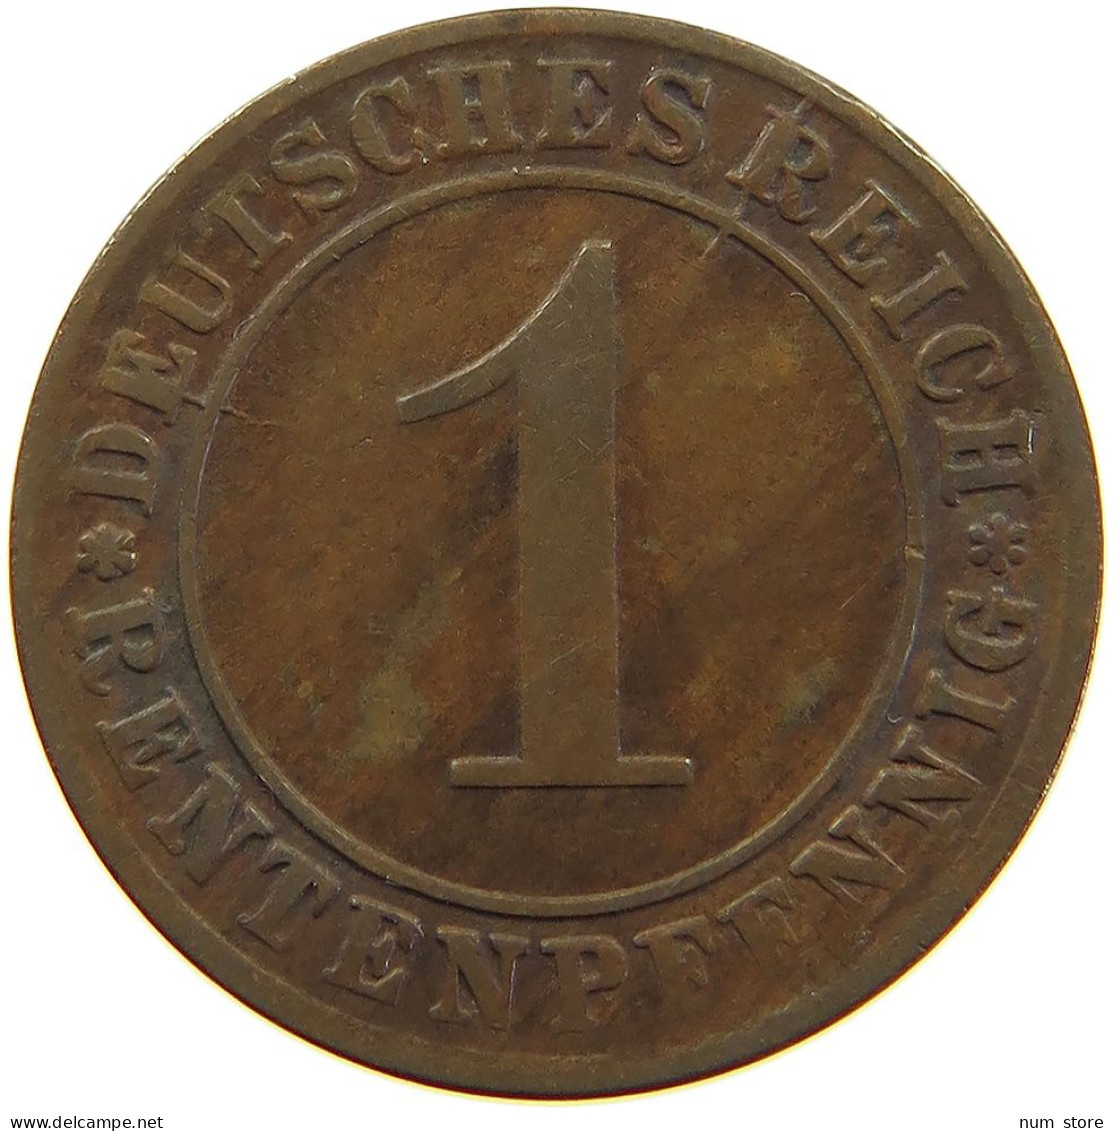 WEIMARER REPUBLIK PFENNIG 1924 E WEAK STRUCK #a074 0701 - 1 Renten- & 1 Reichspfennig